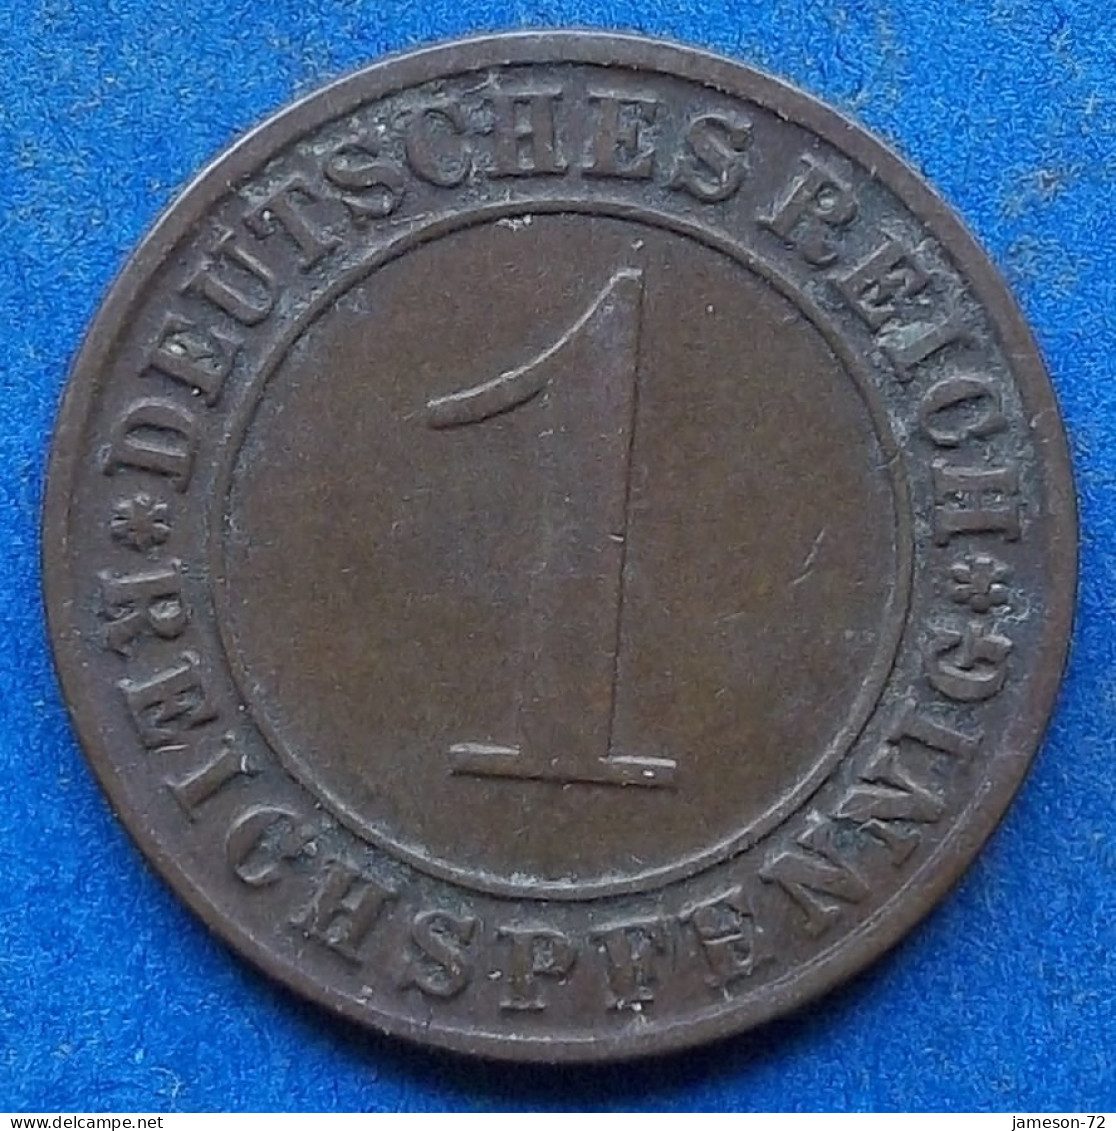 GERMANY - 1 Reichspfennig 1929 A KM# 37 Weimar Republic Reichsmark Coinage (1924-1938) - Edelweiss Coins - 1 Rentenpfennig & 1 Reichspfennig